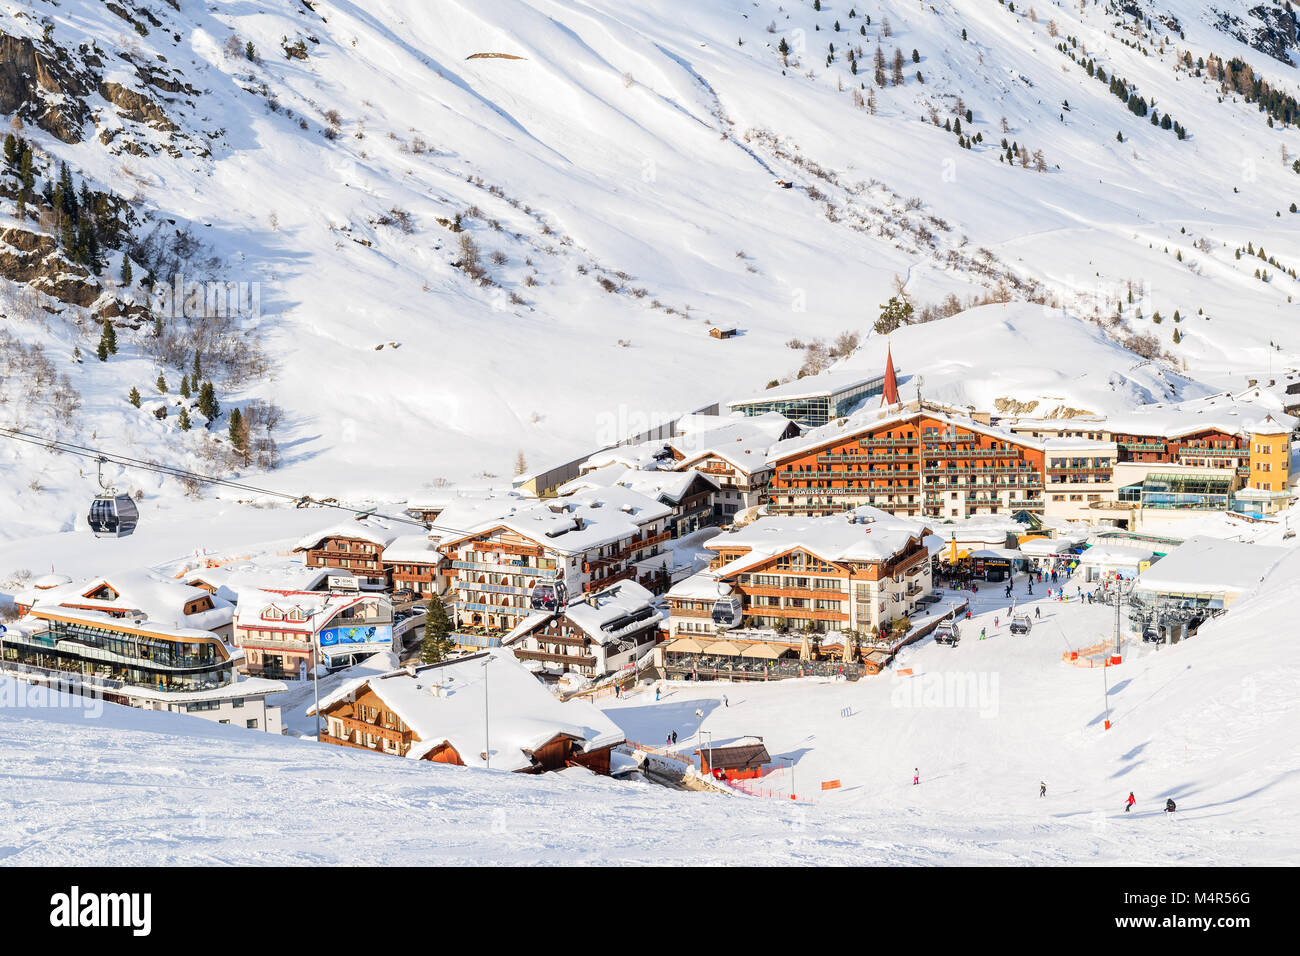 HOCHGURGL VILLAGE, AUSTRIA - Jan 28, 2018: pueblo de montaña con hoteles y casas en la bella zona de esquí de Hochgurgl-Obergurgl, Tirol, Austria. Foto de stock